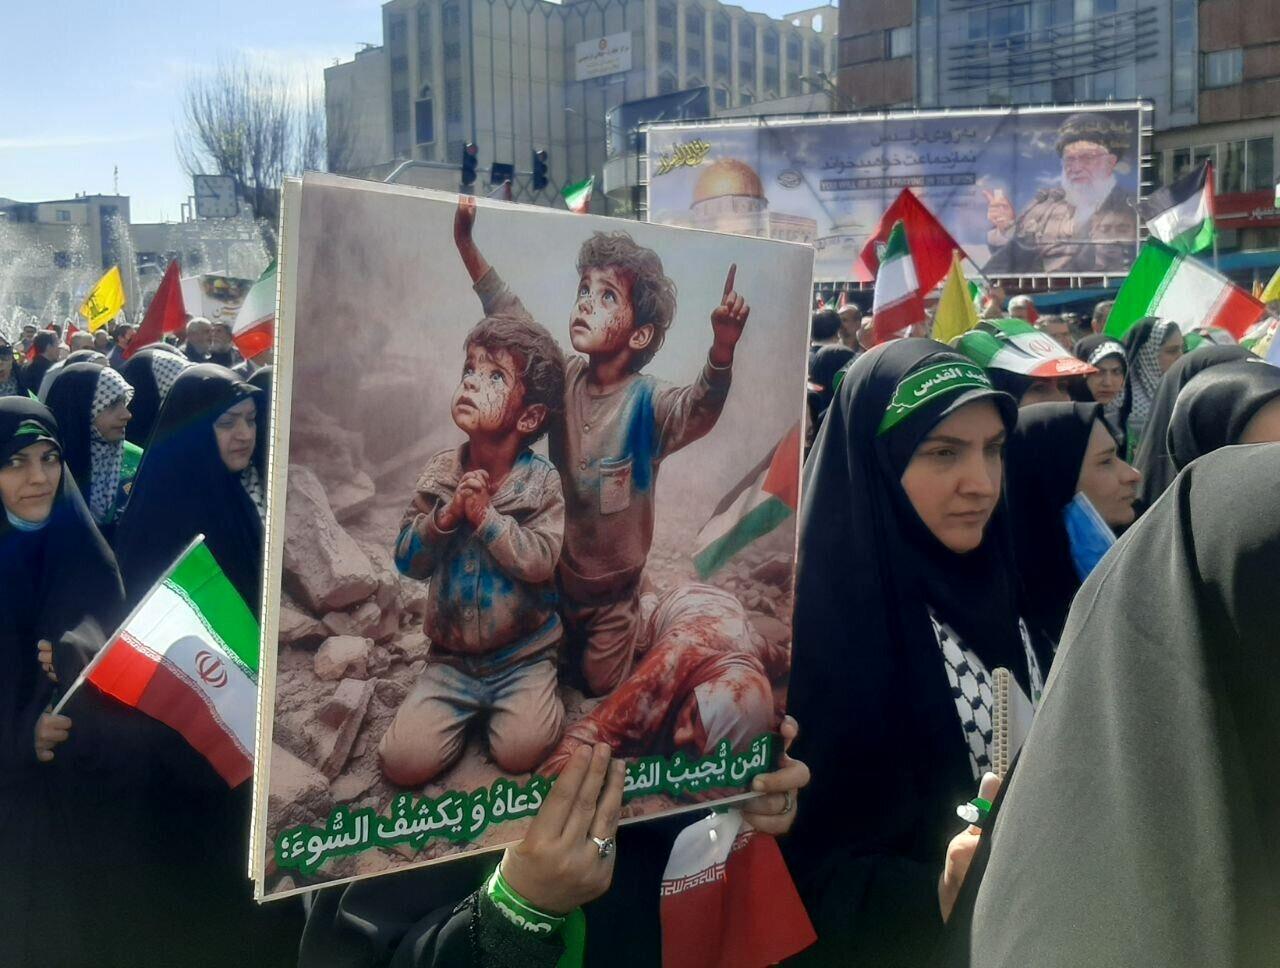  چهرهای سیاسی و نظامی در راهپیمایی روز قدس، از حسن روحانی تا ناطق نوری؛ احمدی نژاد نبود+تصاویر